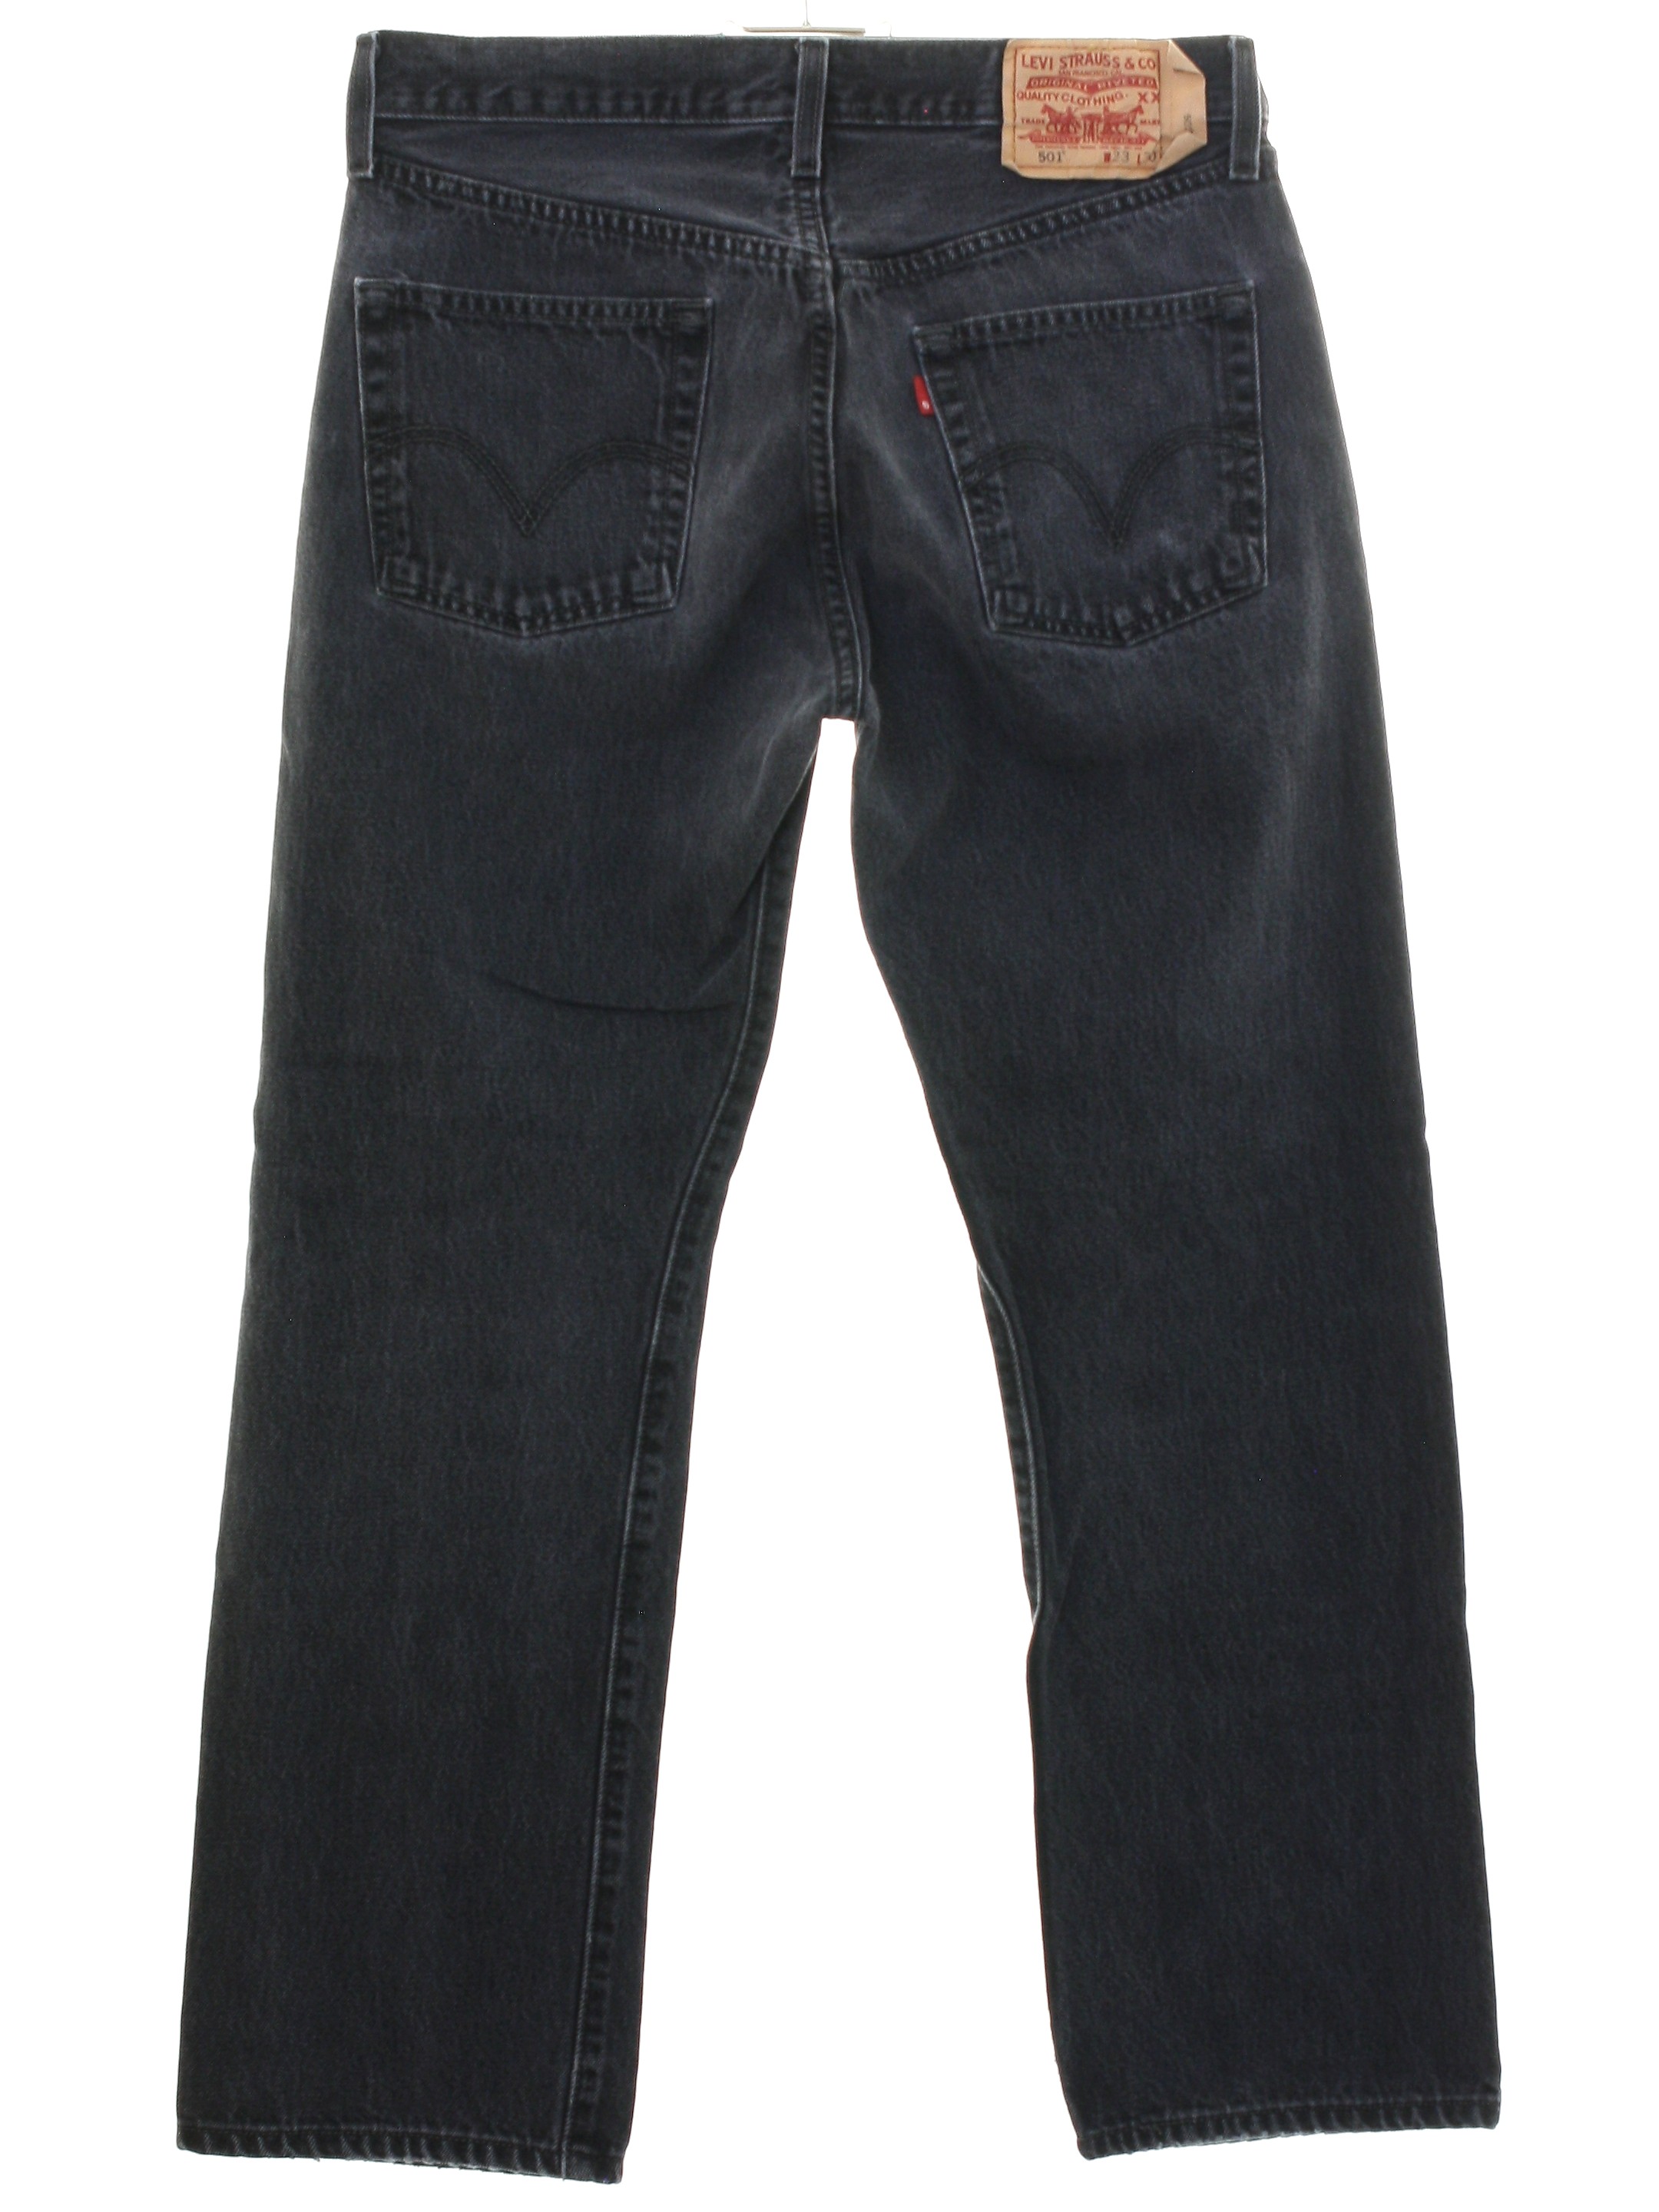 mens vintage levis 501 jeans